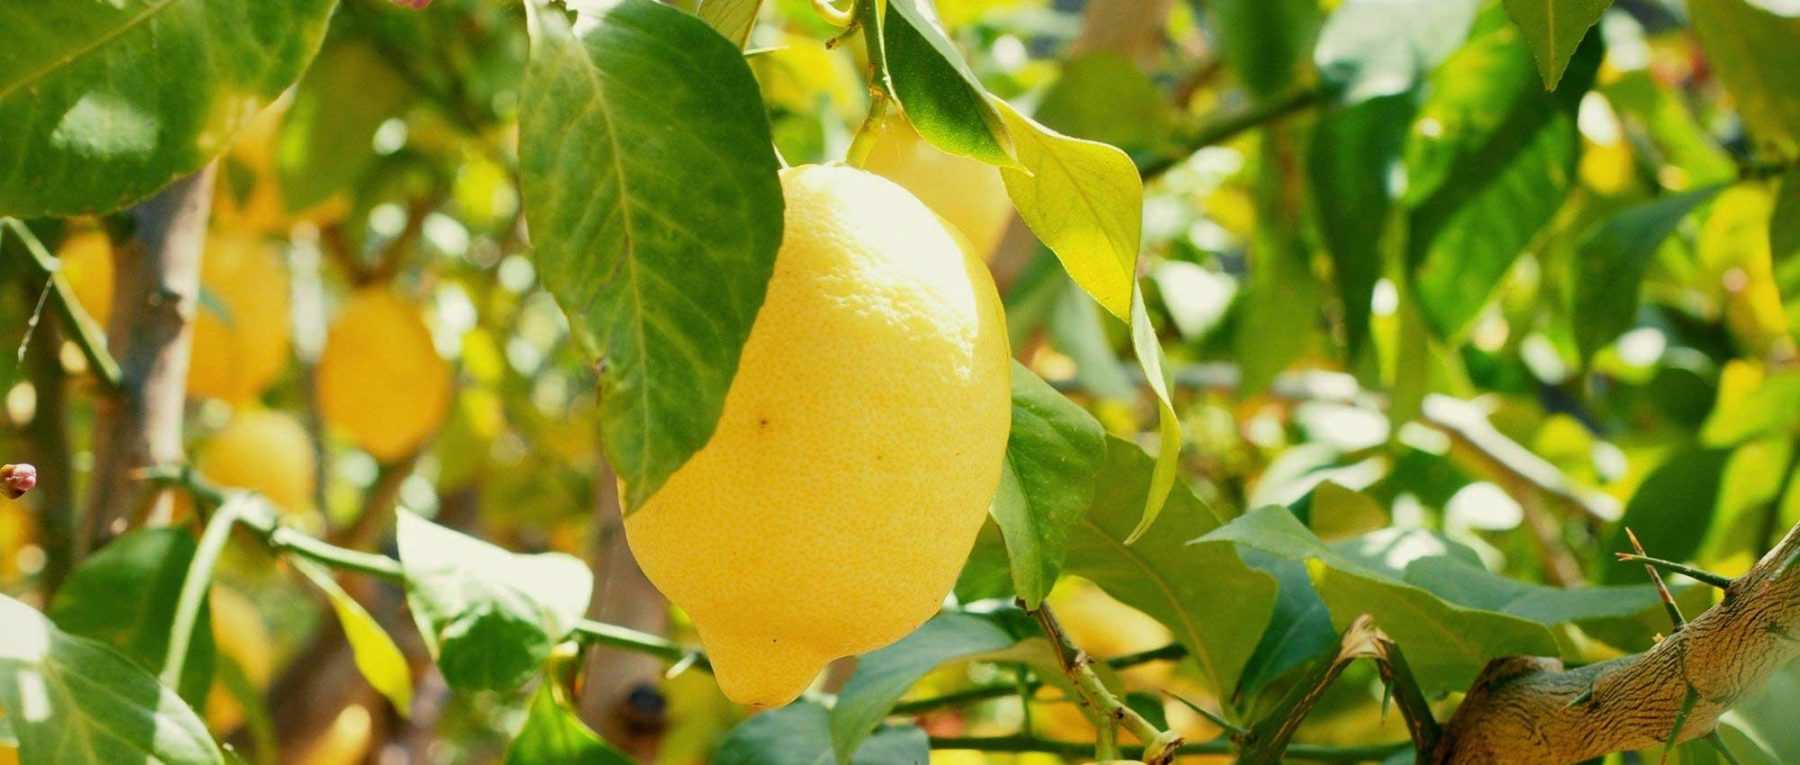 Planter un citronnier en pot - Gamm vert